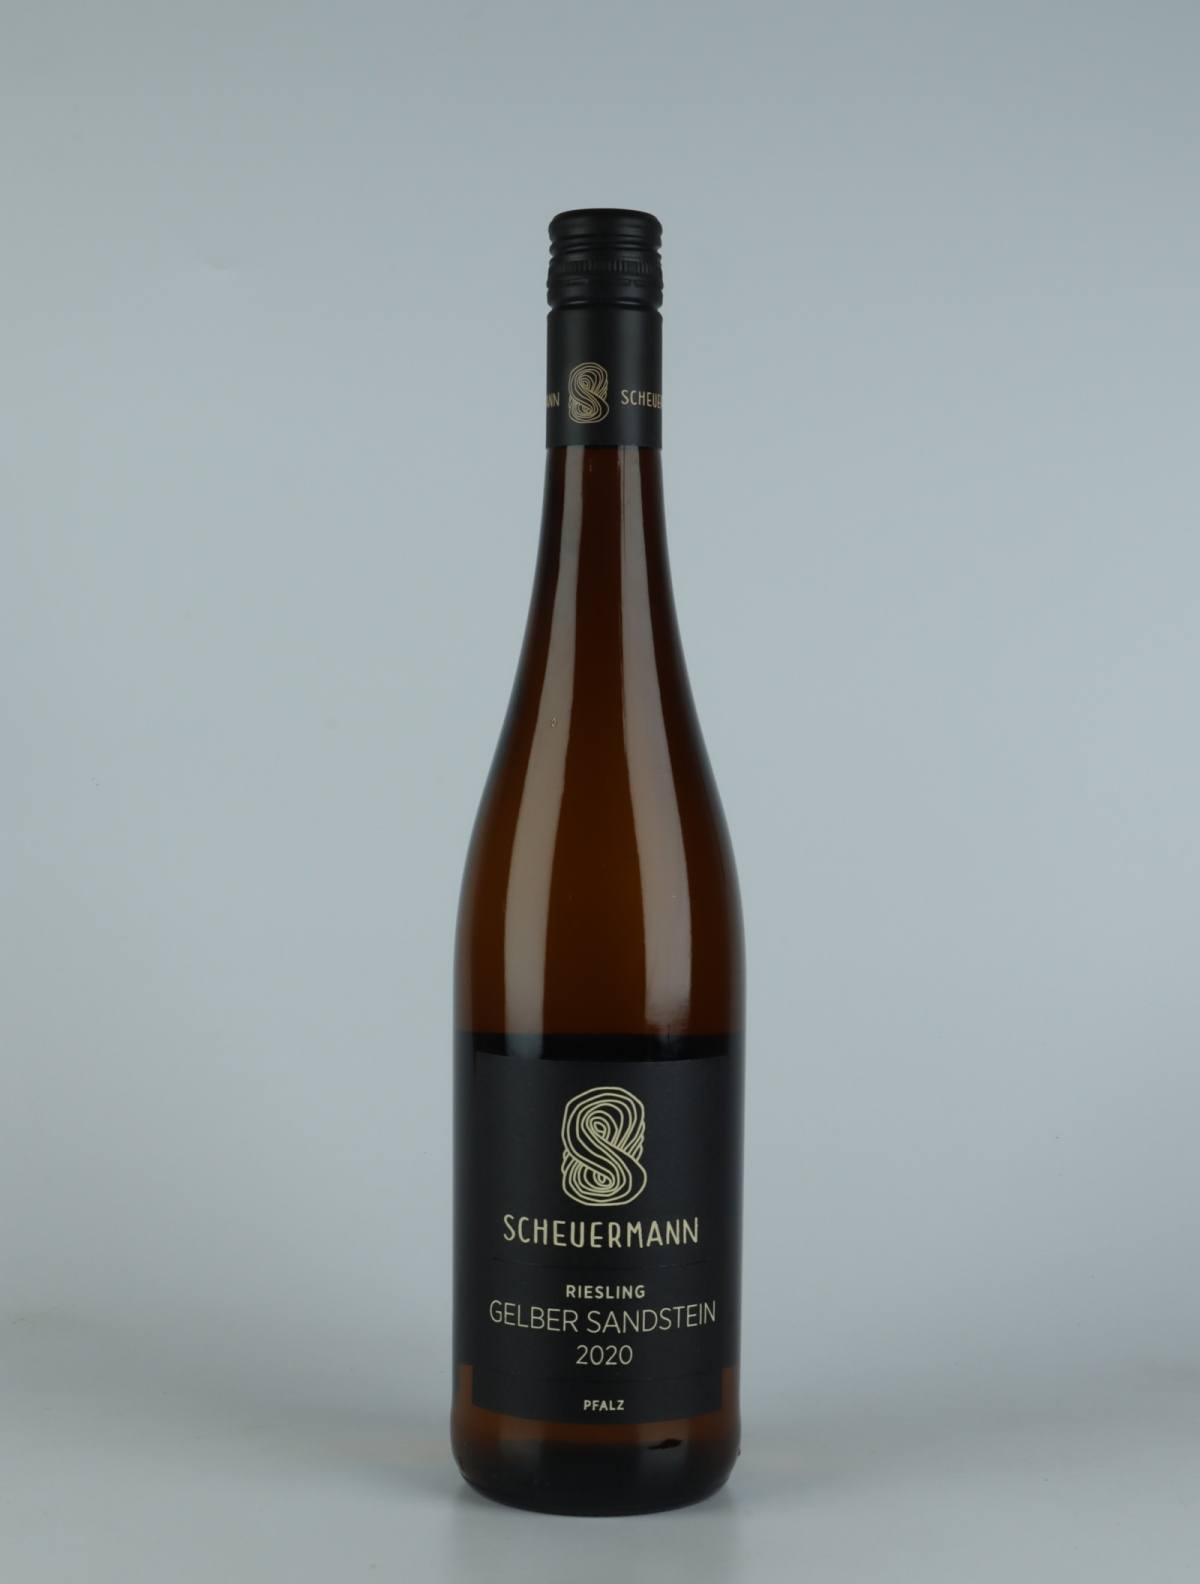 A bottle 2020 Riesling Gelber Sandstein White wine from Weingut Scheuermann, Pfalz in Germany